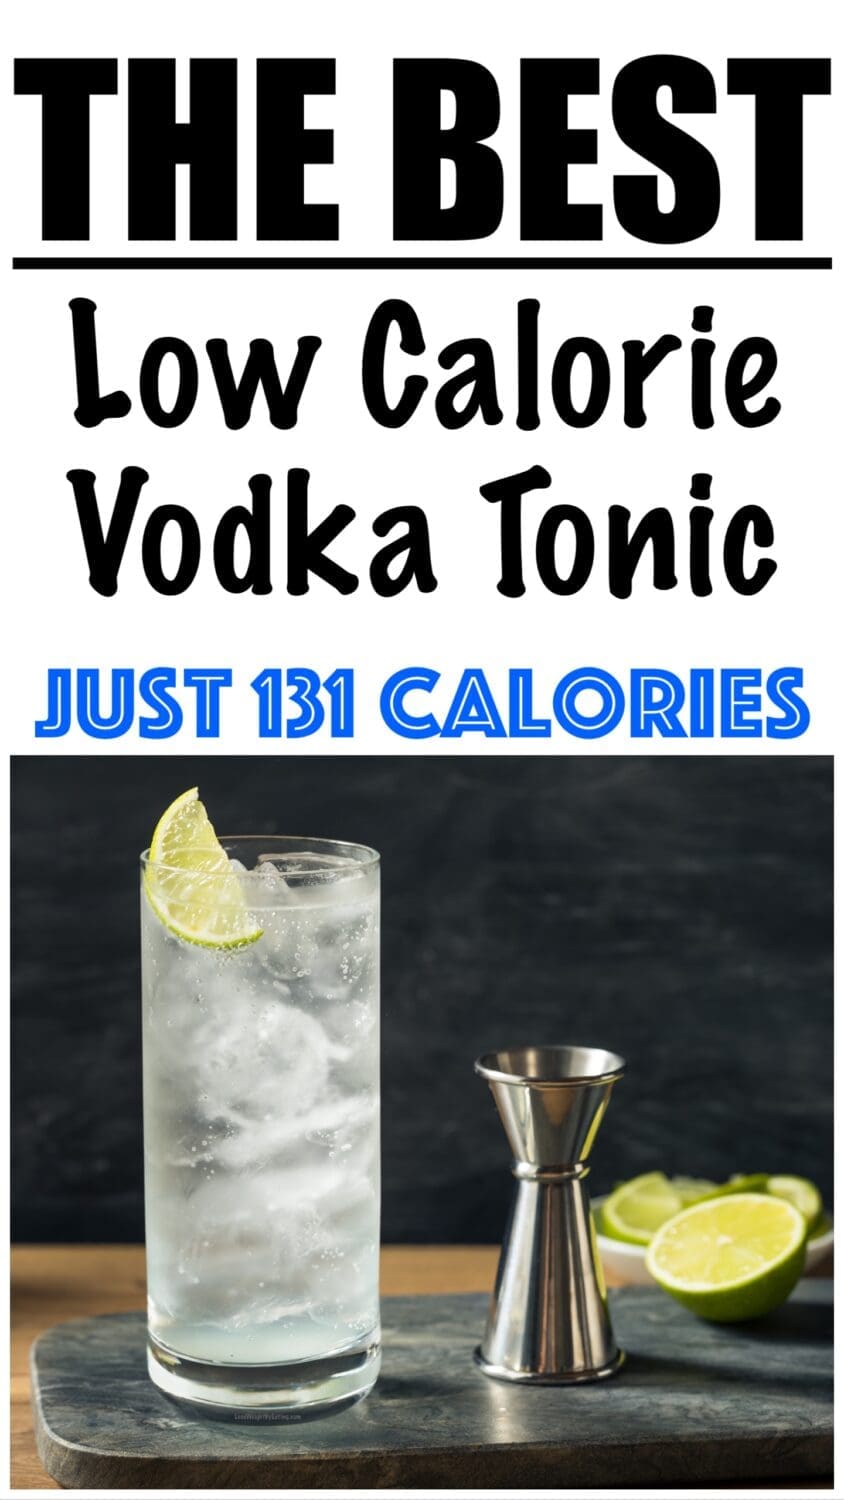 Low Calorie Vodka Tonic Recipe